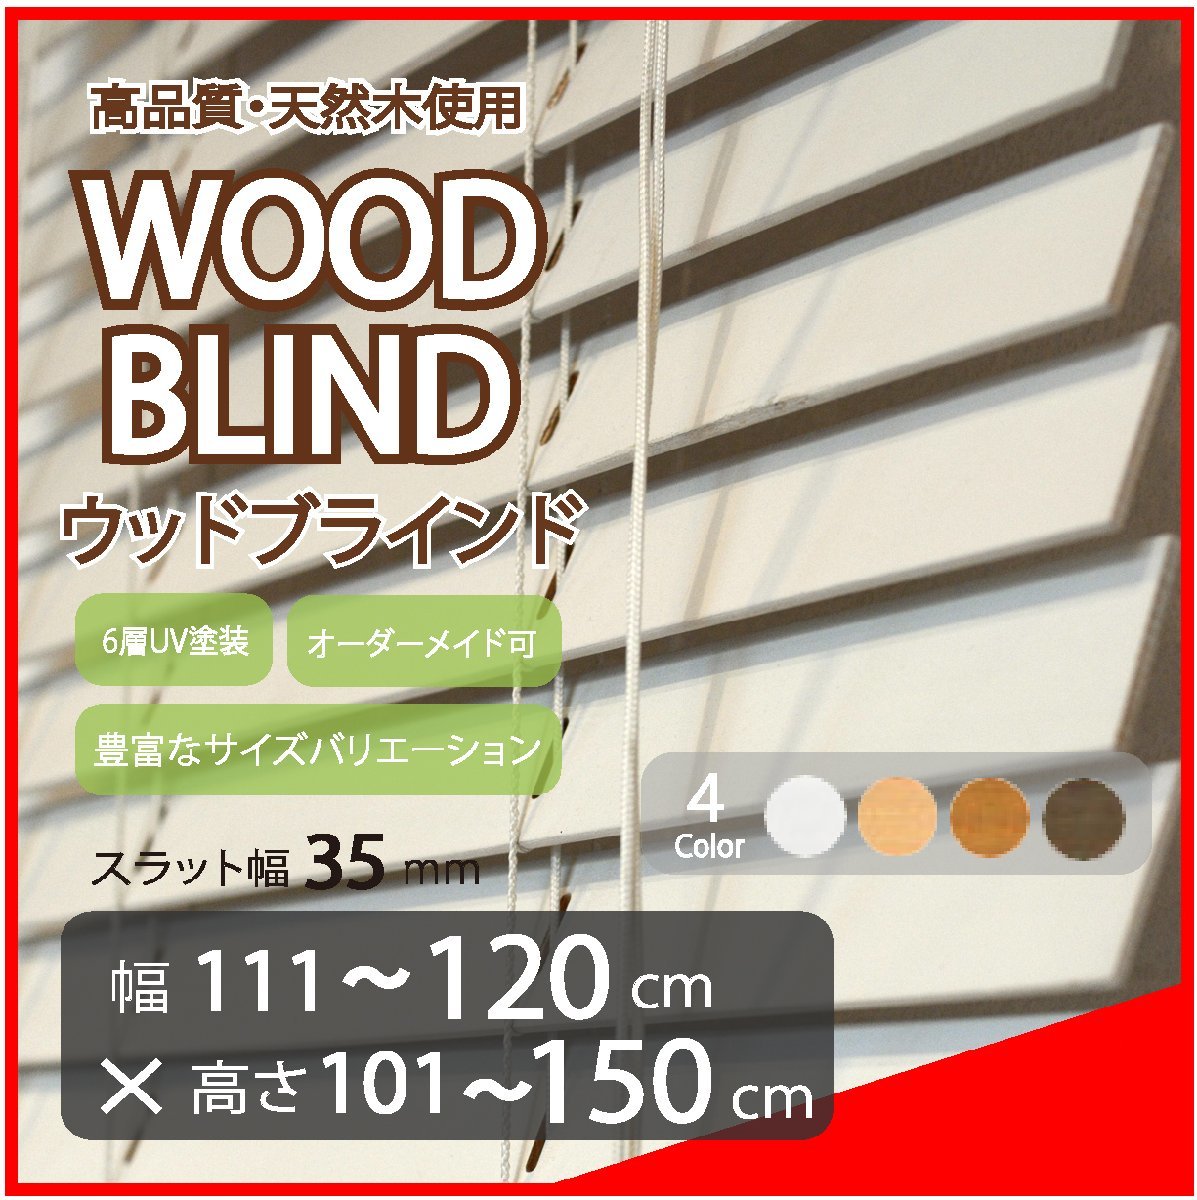 窓枠に合わせてサイズ加工が可能 高品質 木製 ウッド ブラインド オーダー可 スラット(羽根)幅35mm 幅111～120cm×高さ101～150cm